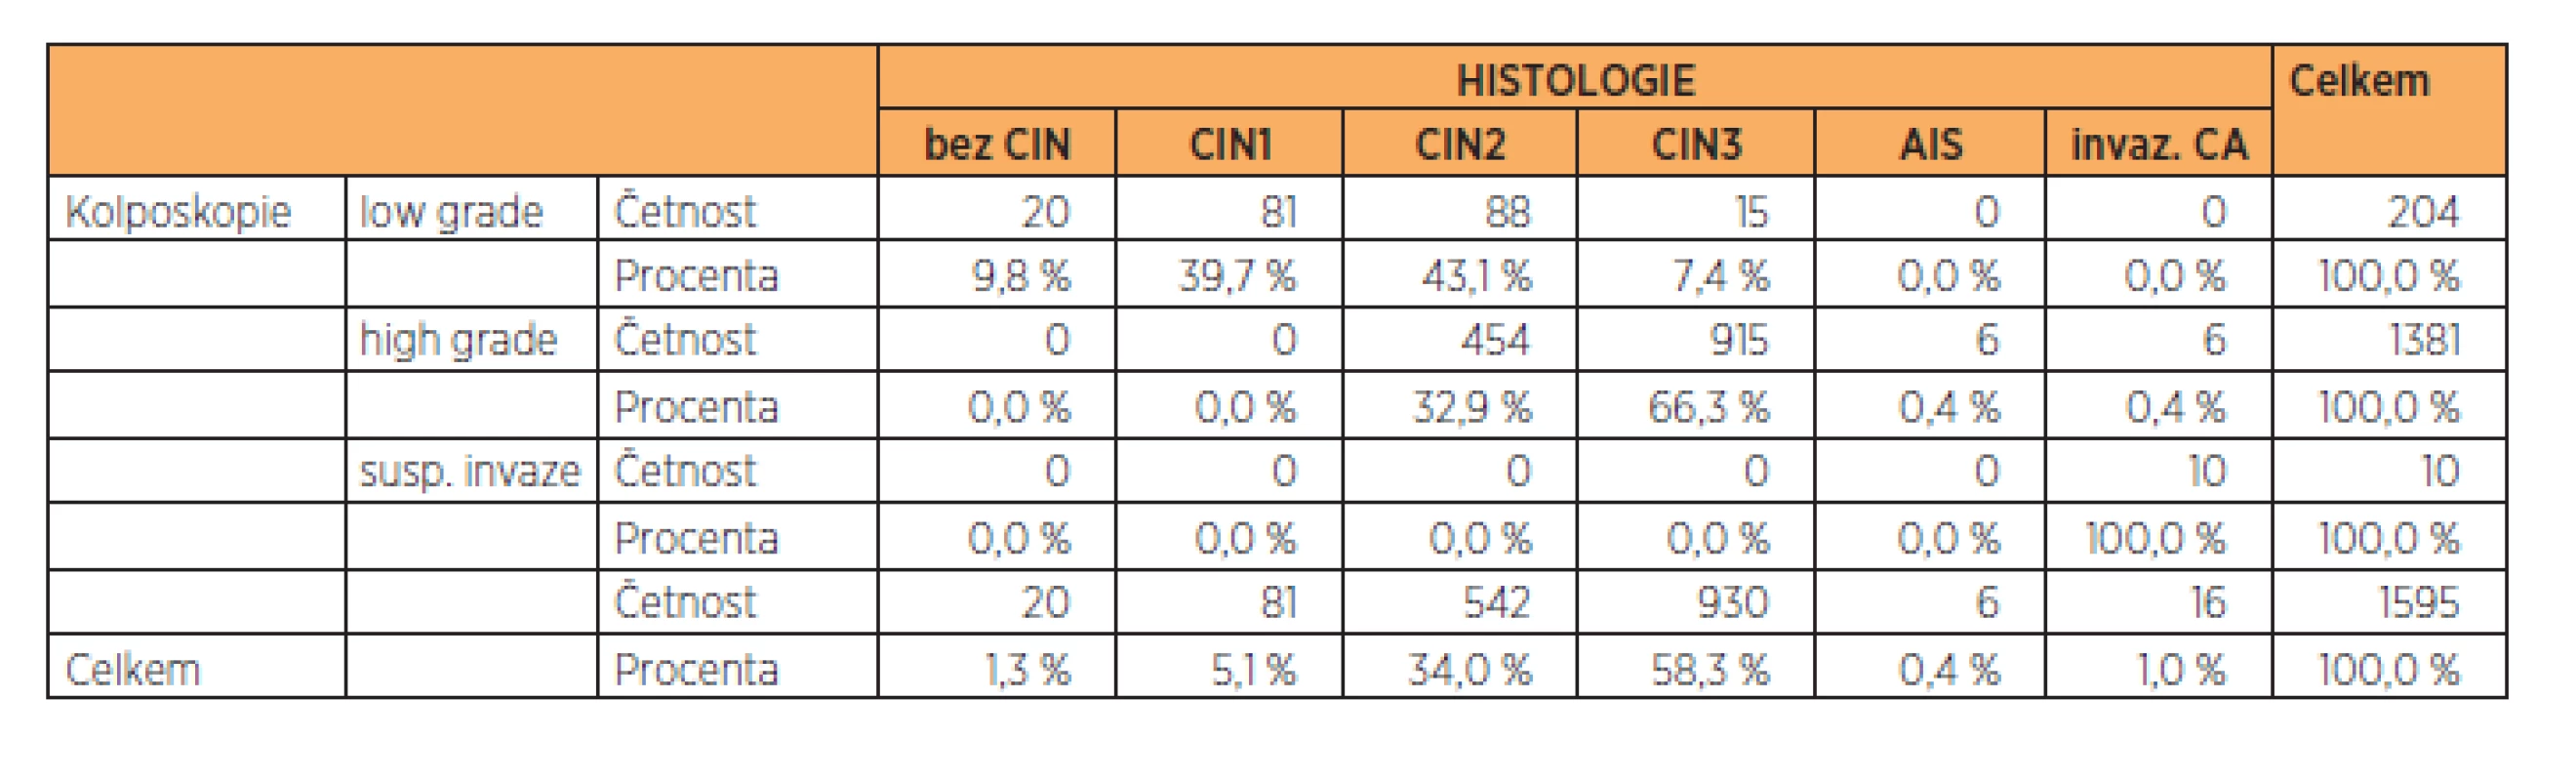 Zastoupení jednotlivých výsledků kolposkopie vs. histologie ve sledovaném souboru (n = 1595), vyřazena skupina pacientek s TZ3 (junkční zóna částečně nebo zcela nepřehledná)